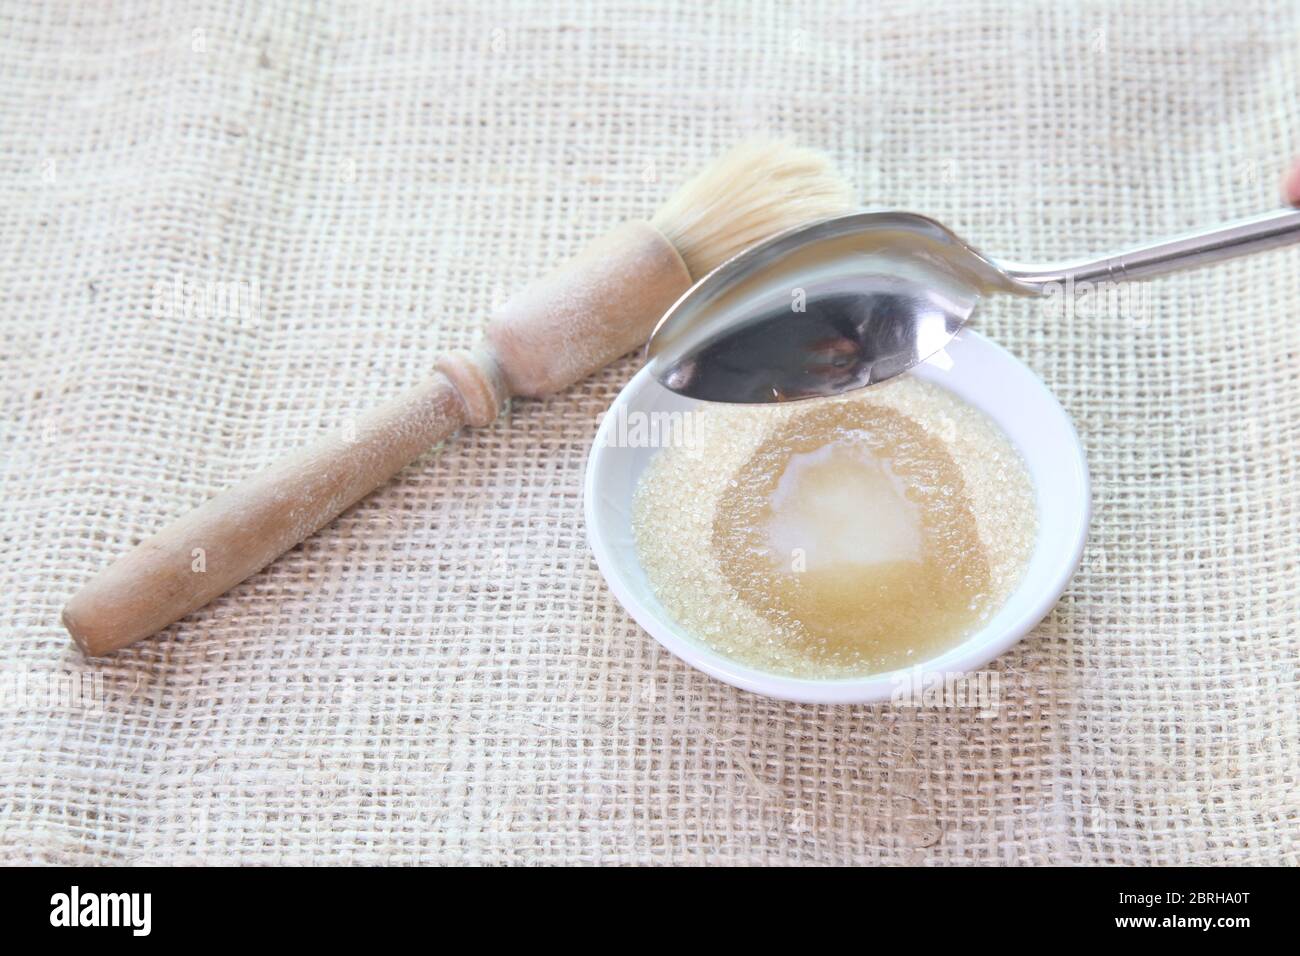 Faire une pâte de sirop de sucre en ajoutant de l'eau à non raffiné Sucre granulé pour le brossage sur les petits pains - Sally Série d'images Lunn Baking Banque D'Images